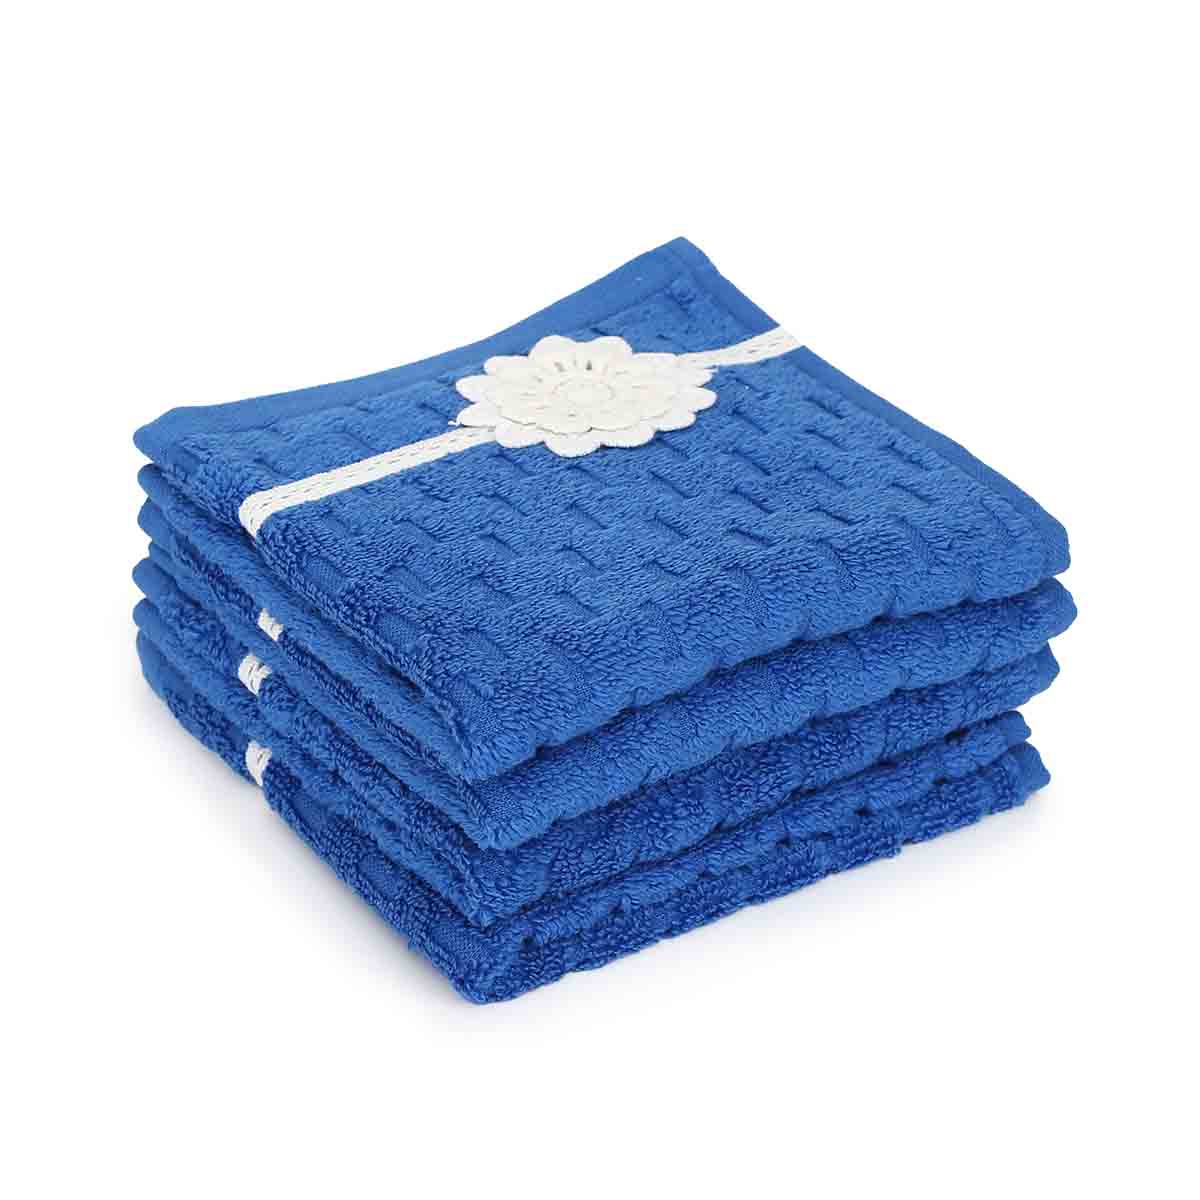 Cobalt Face Towel set of 4